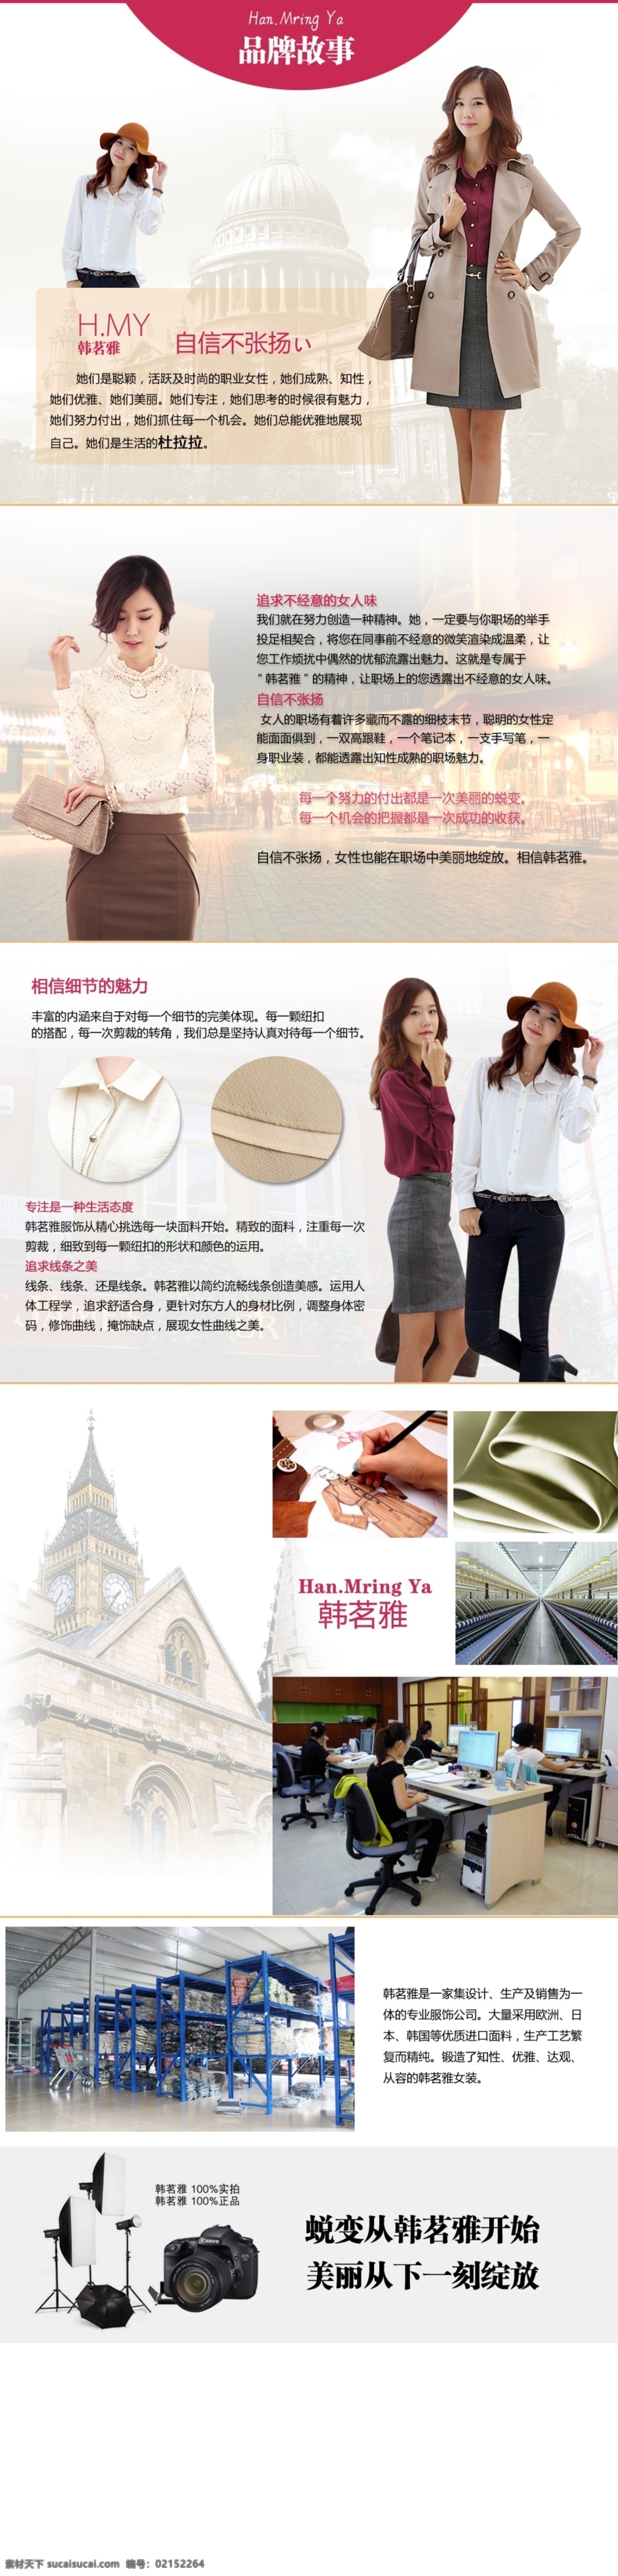 品牌 文化 排版 女装 品牌文化 网页模板 源文件 中文模版 品牌文化排版